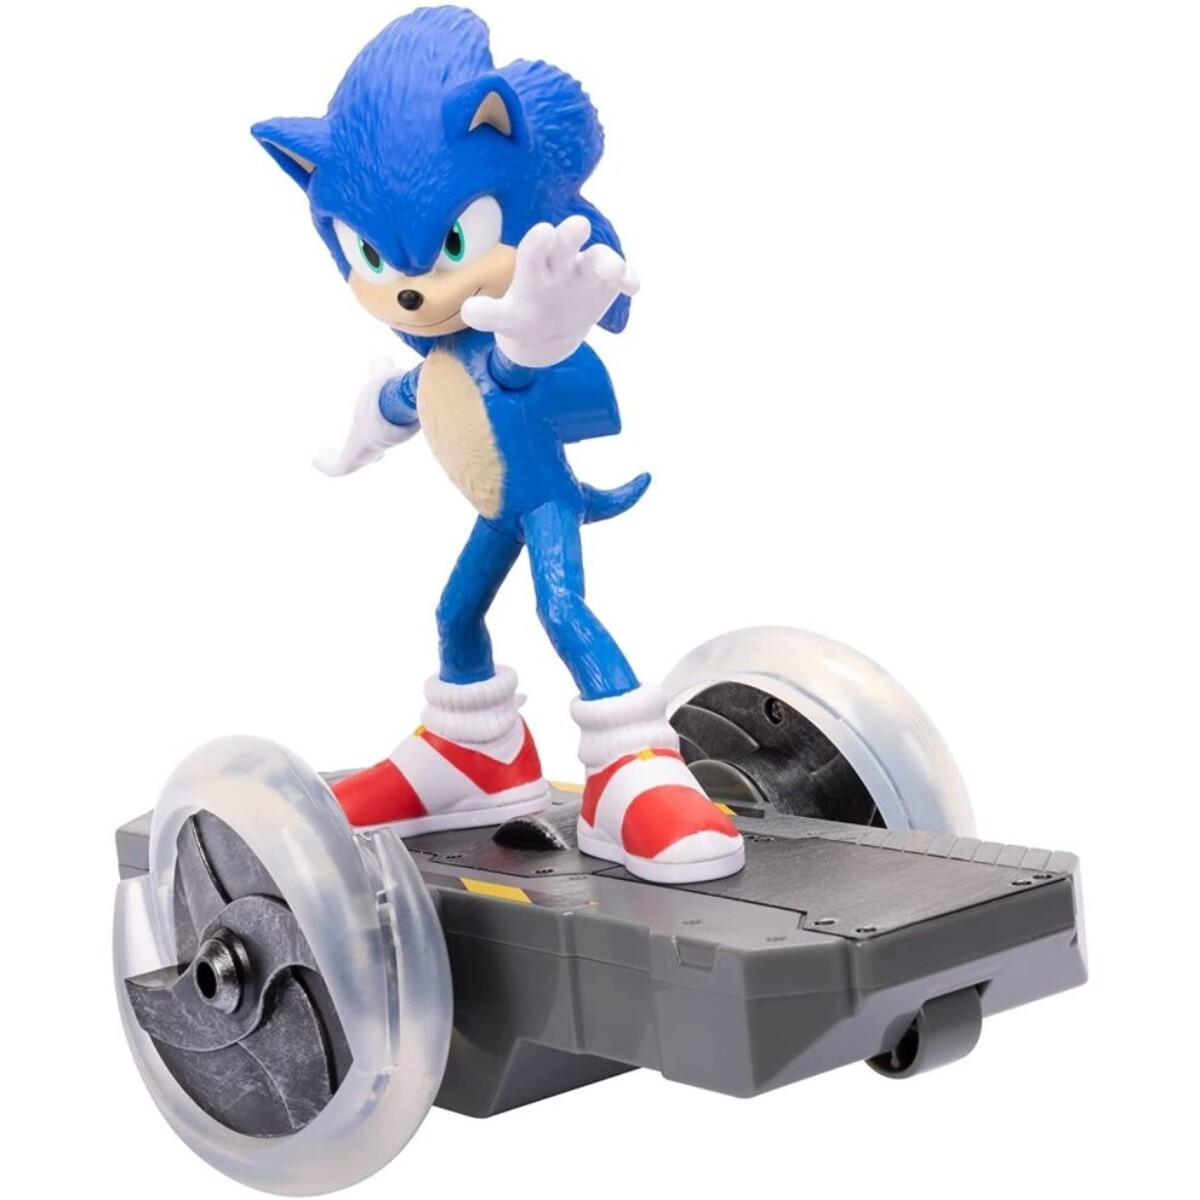 Sonic a Control Remoto Super Rápido 